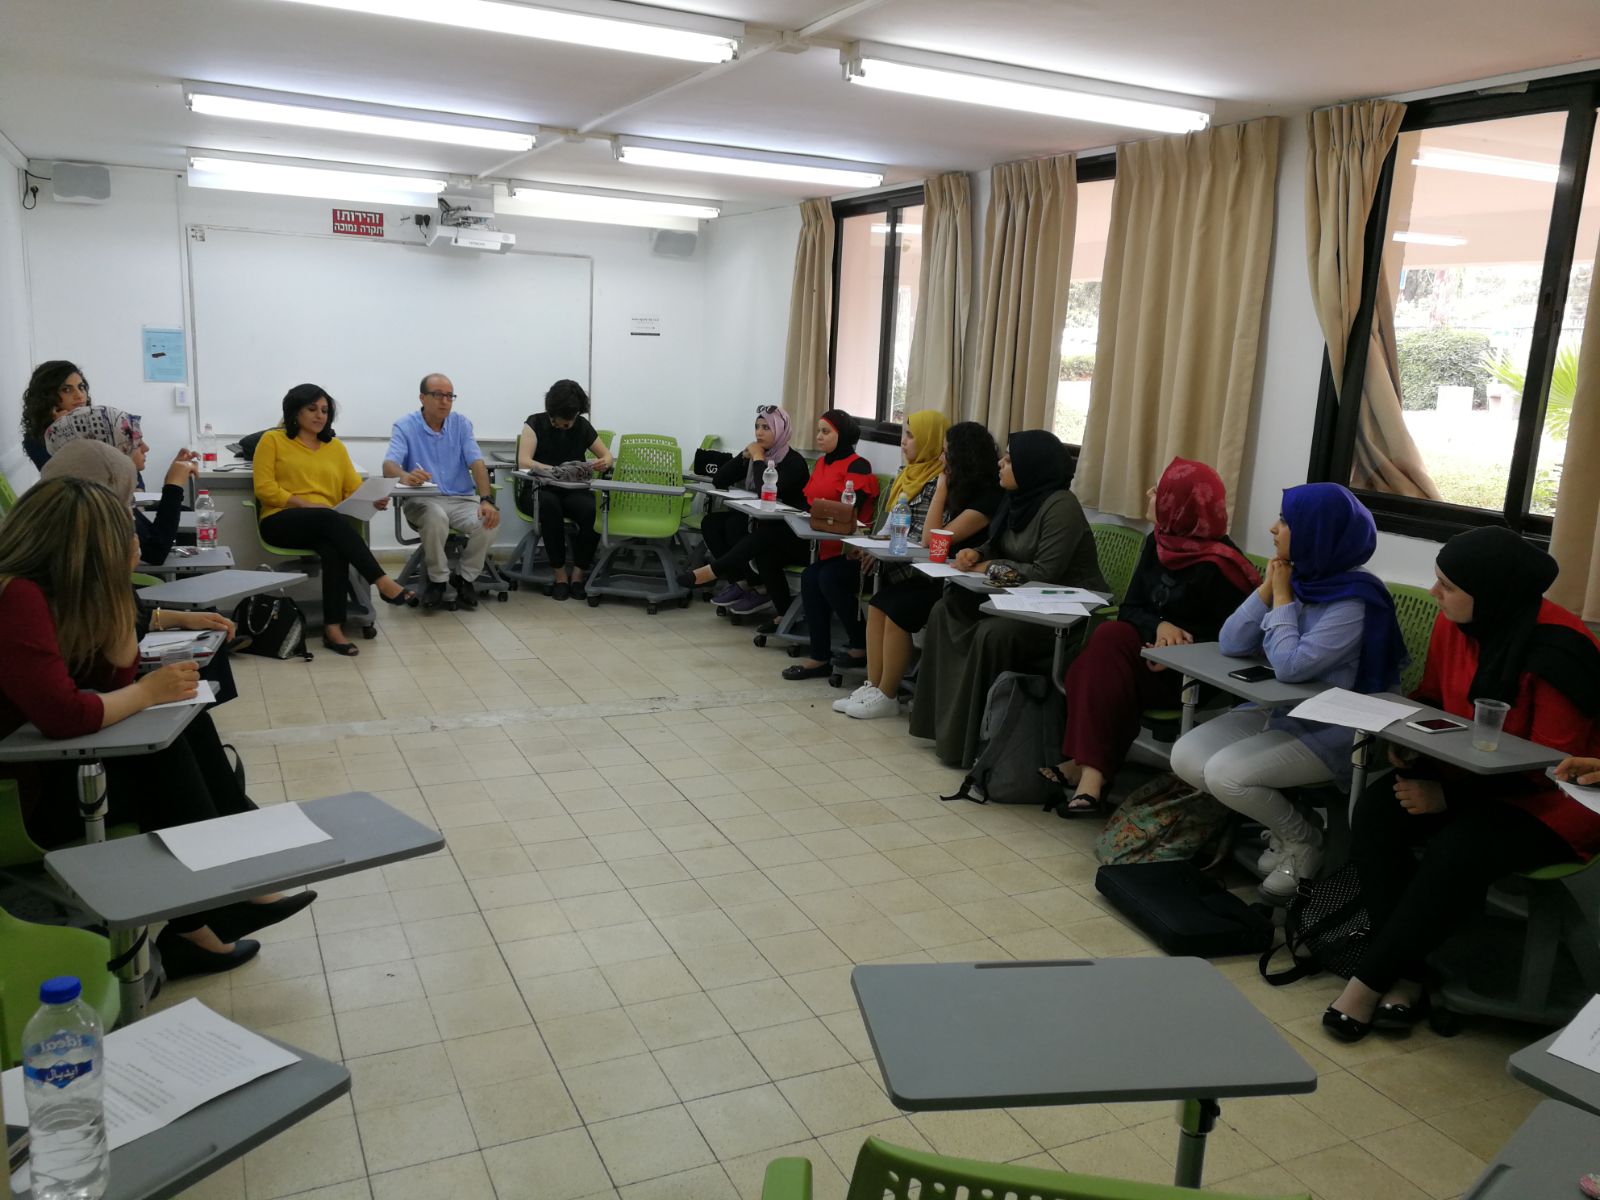 المعهد الأكاديمي العربي للتربية في كلية بيت بيرل يبحث تحدّيات التربية العملية عبر حوار تربوي بين الطلاب والمعلمين والمرشدين